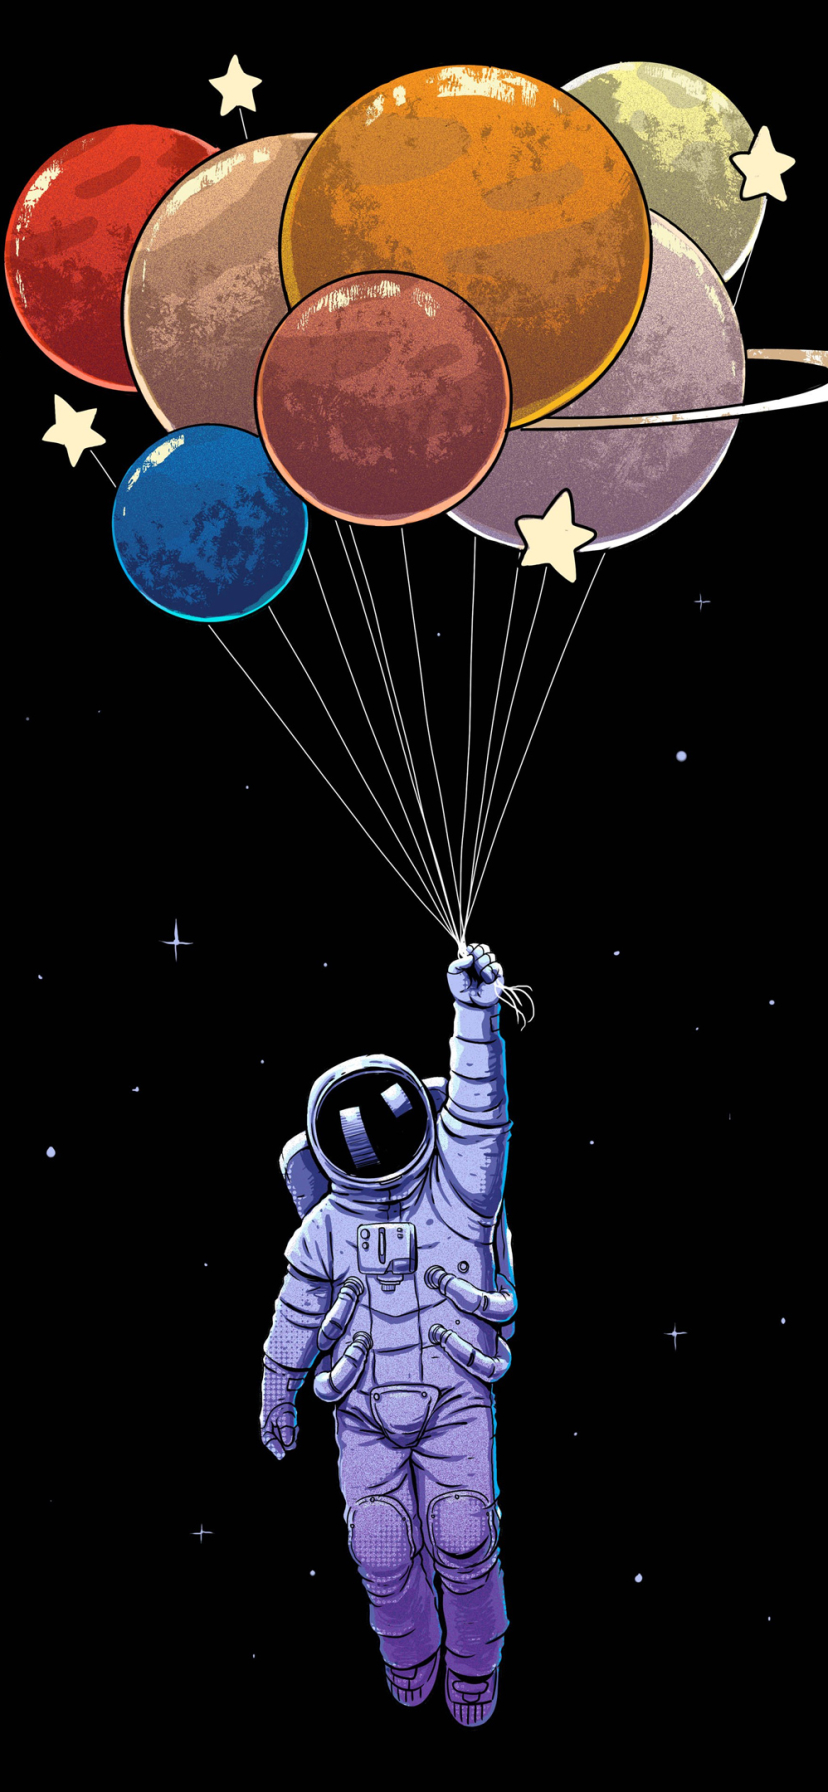 1372653 免費下載壁紙 科幻, 宇航员, 宇航服, 气球 屏保和圖片